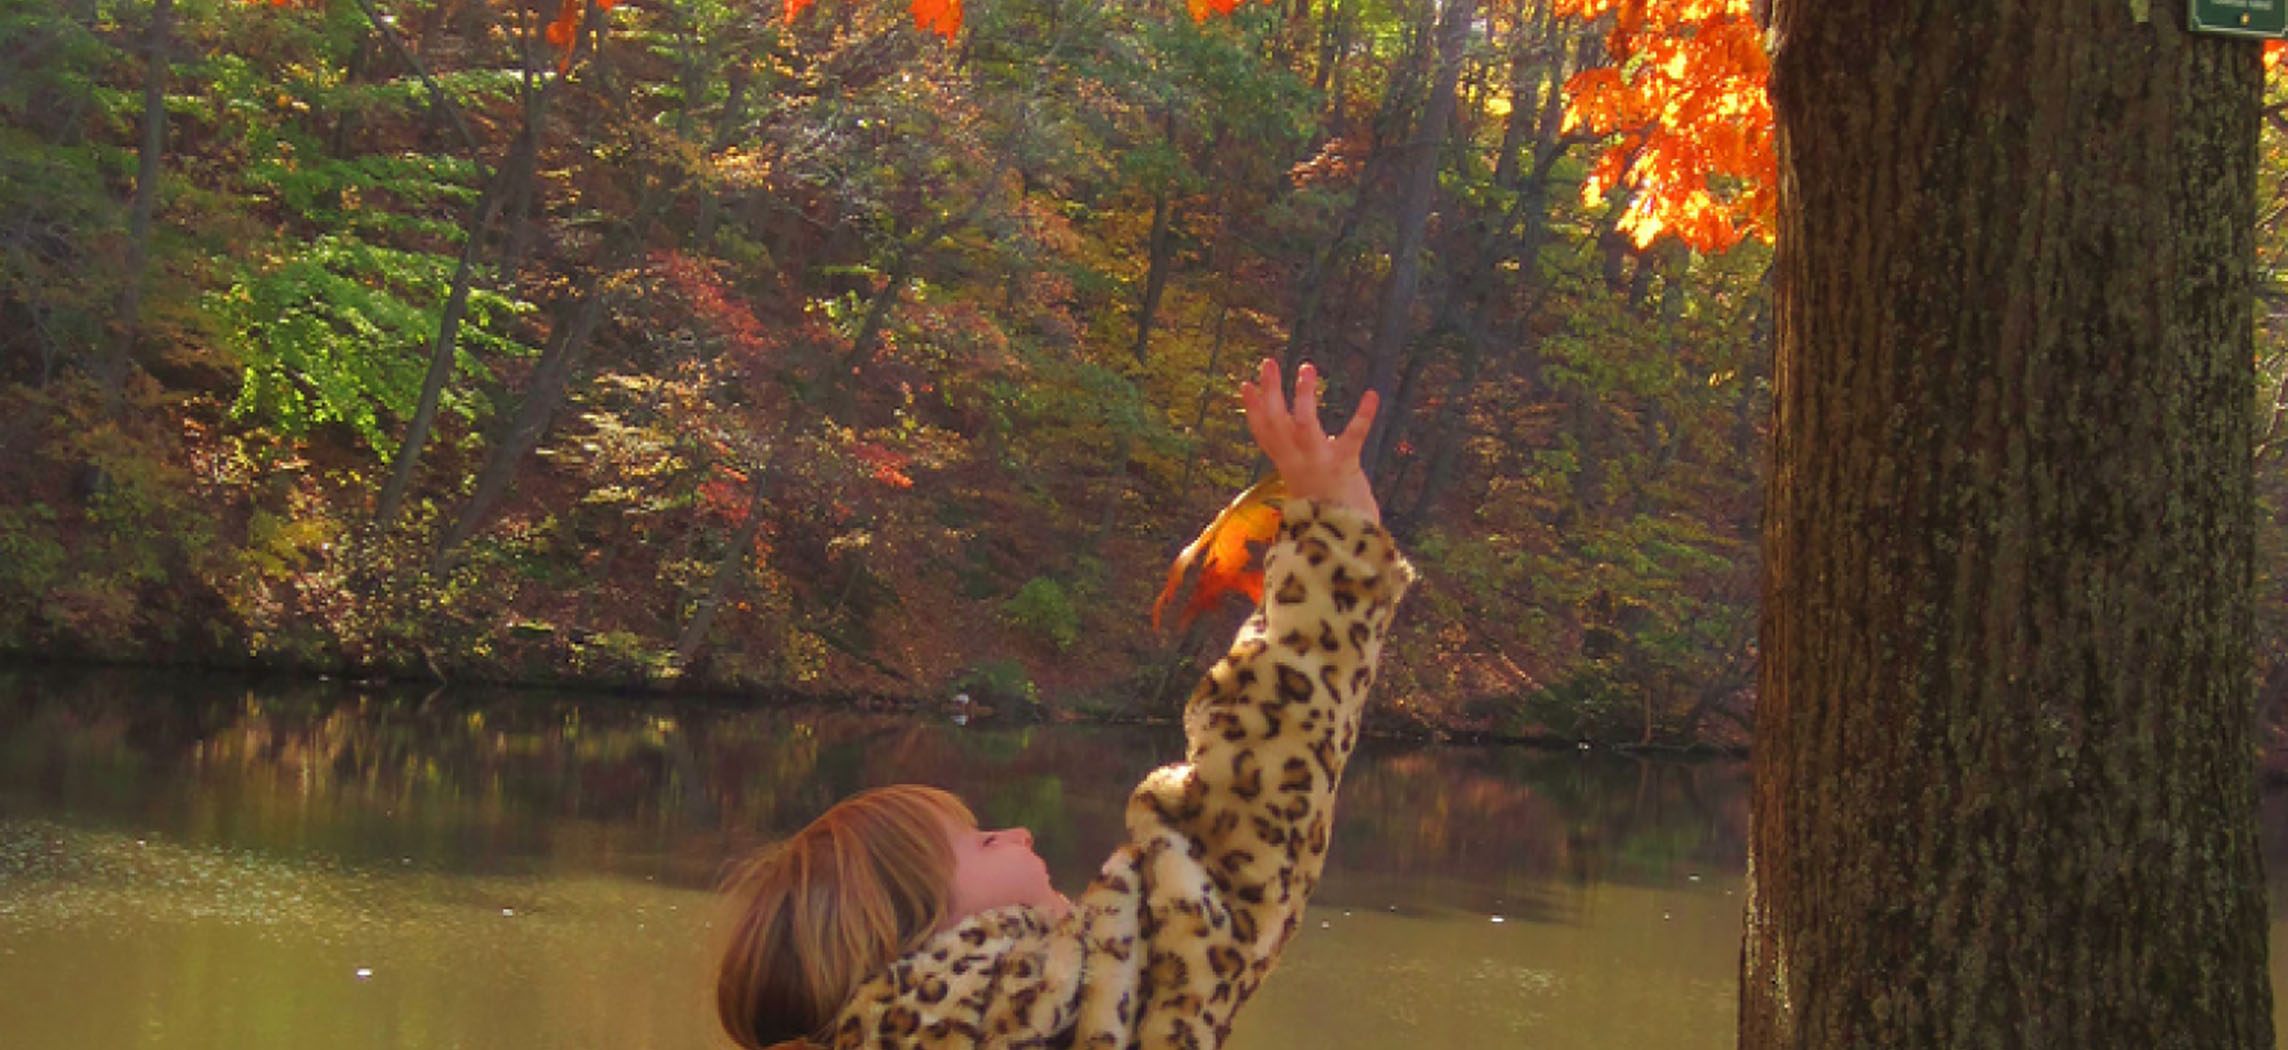 Esta foto mostra uma jovem pegando uma folha de laranja em um carvalho. Ela está em uma passarela perto de um riacho. A margem oposta é uma encosta profunda coberta por mais árvores nas cores do outono.